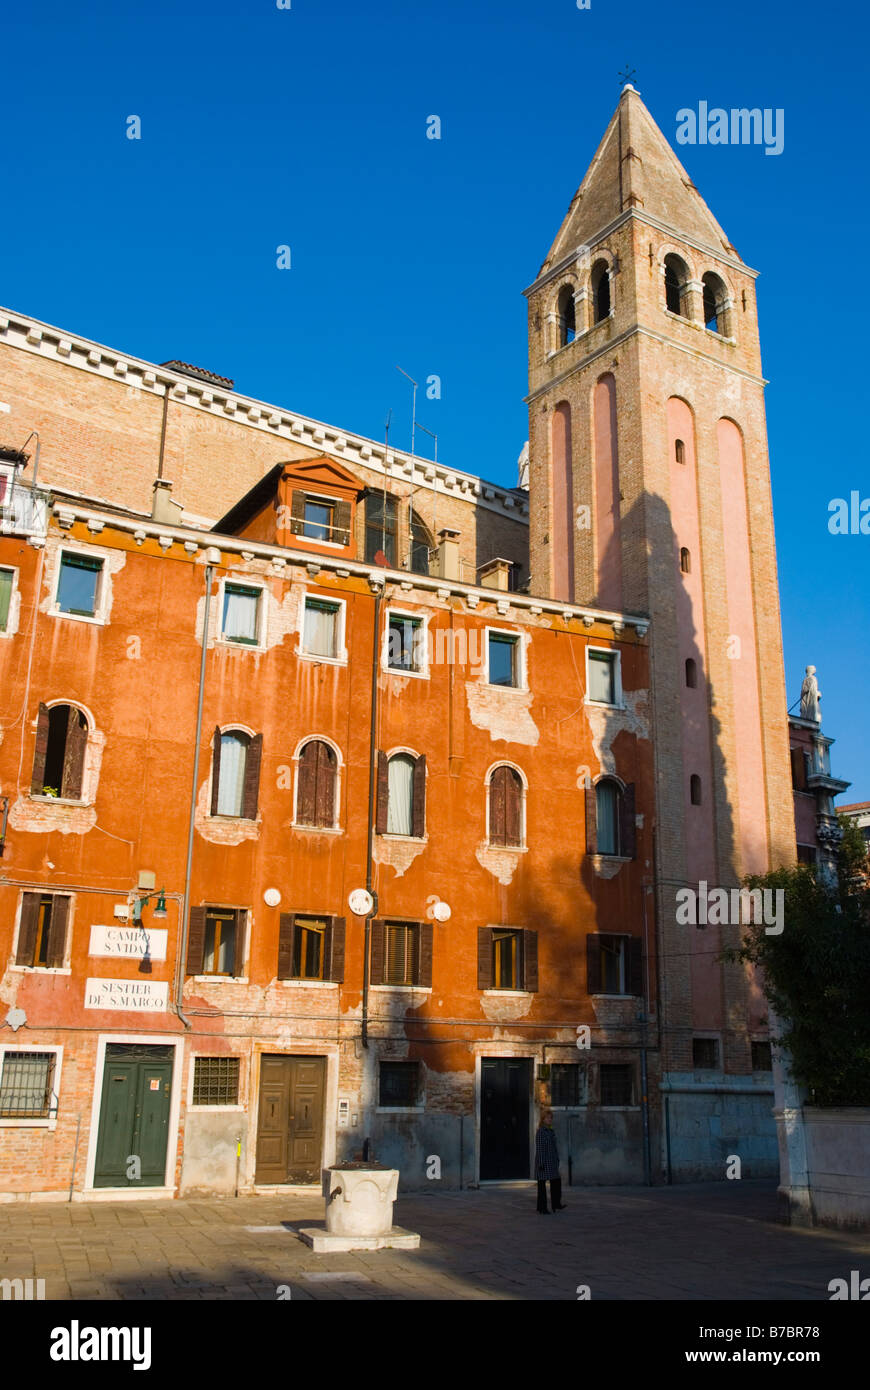 Campo San Vidal dans le quartier de San Marco de Venise Italie Europe Banque D'Images